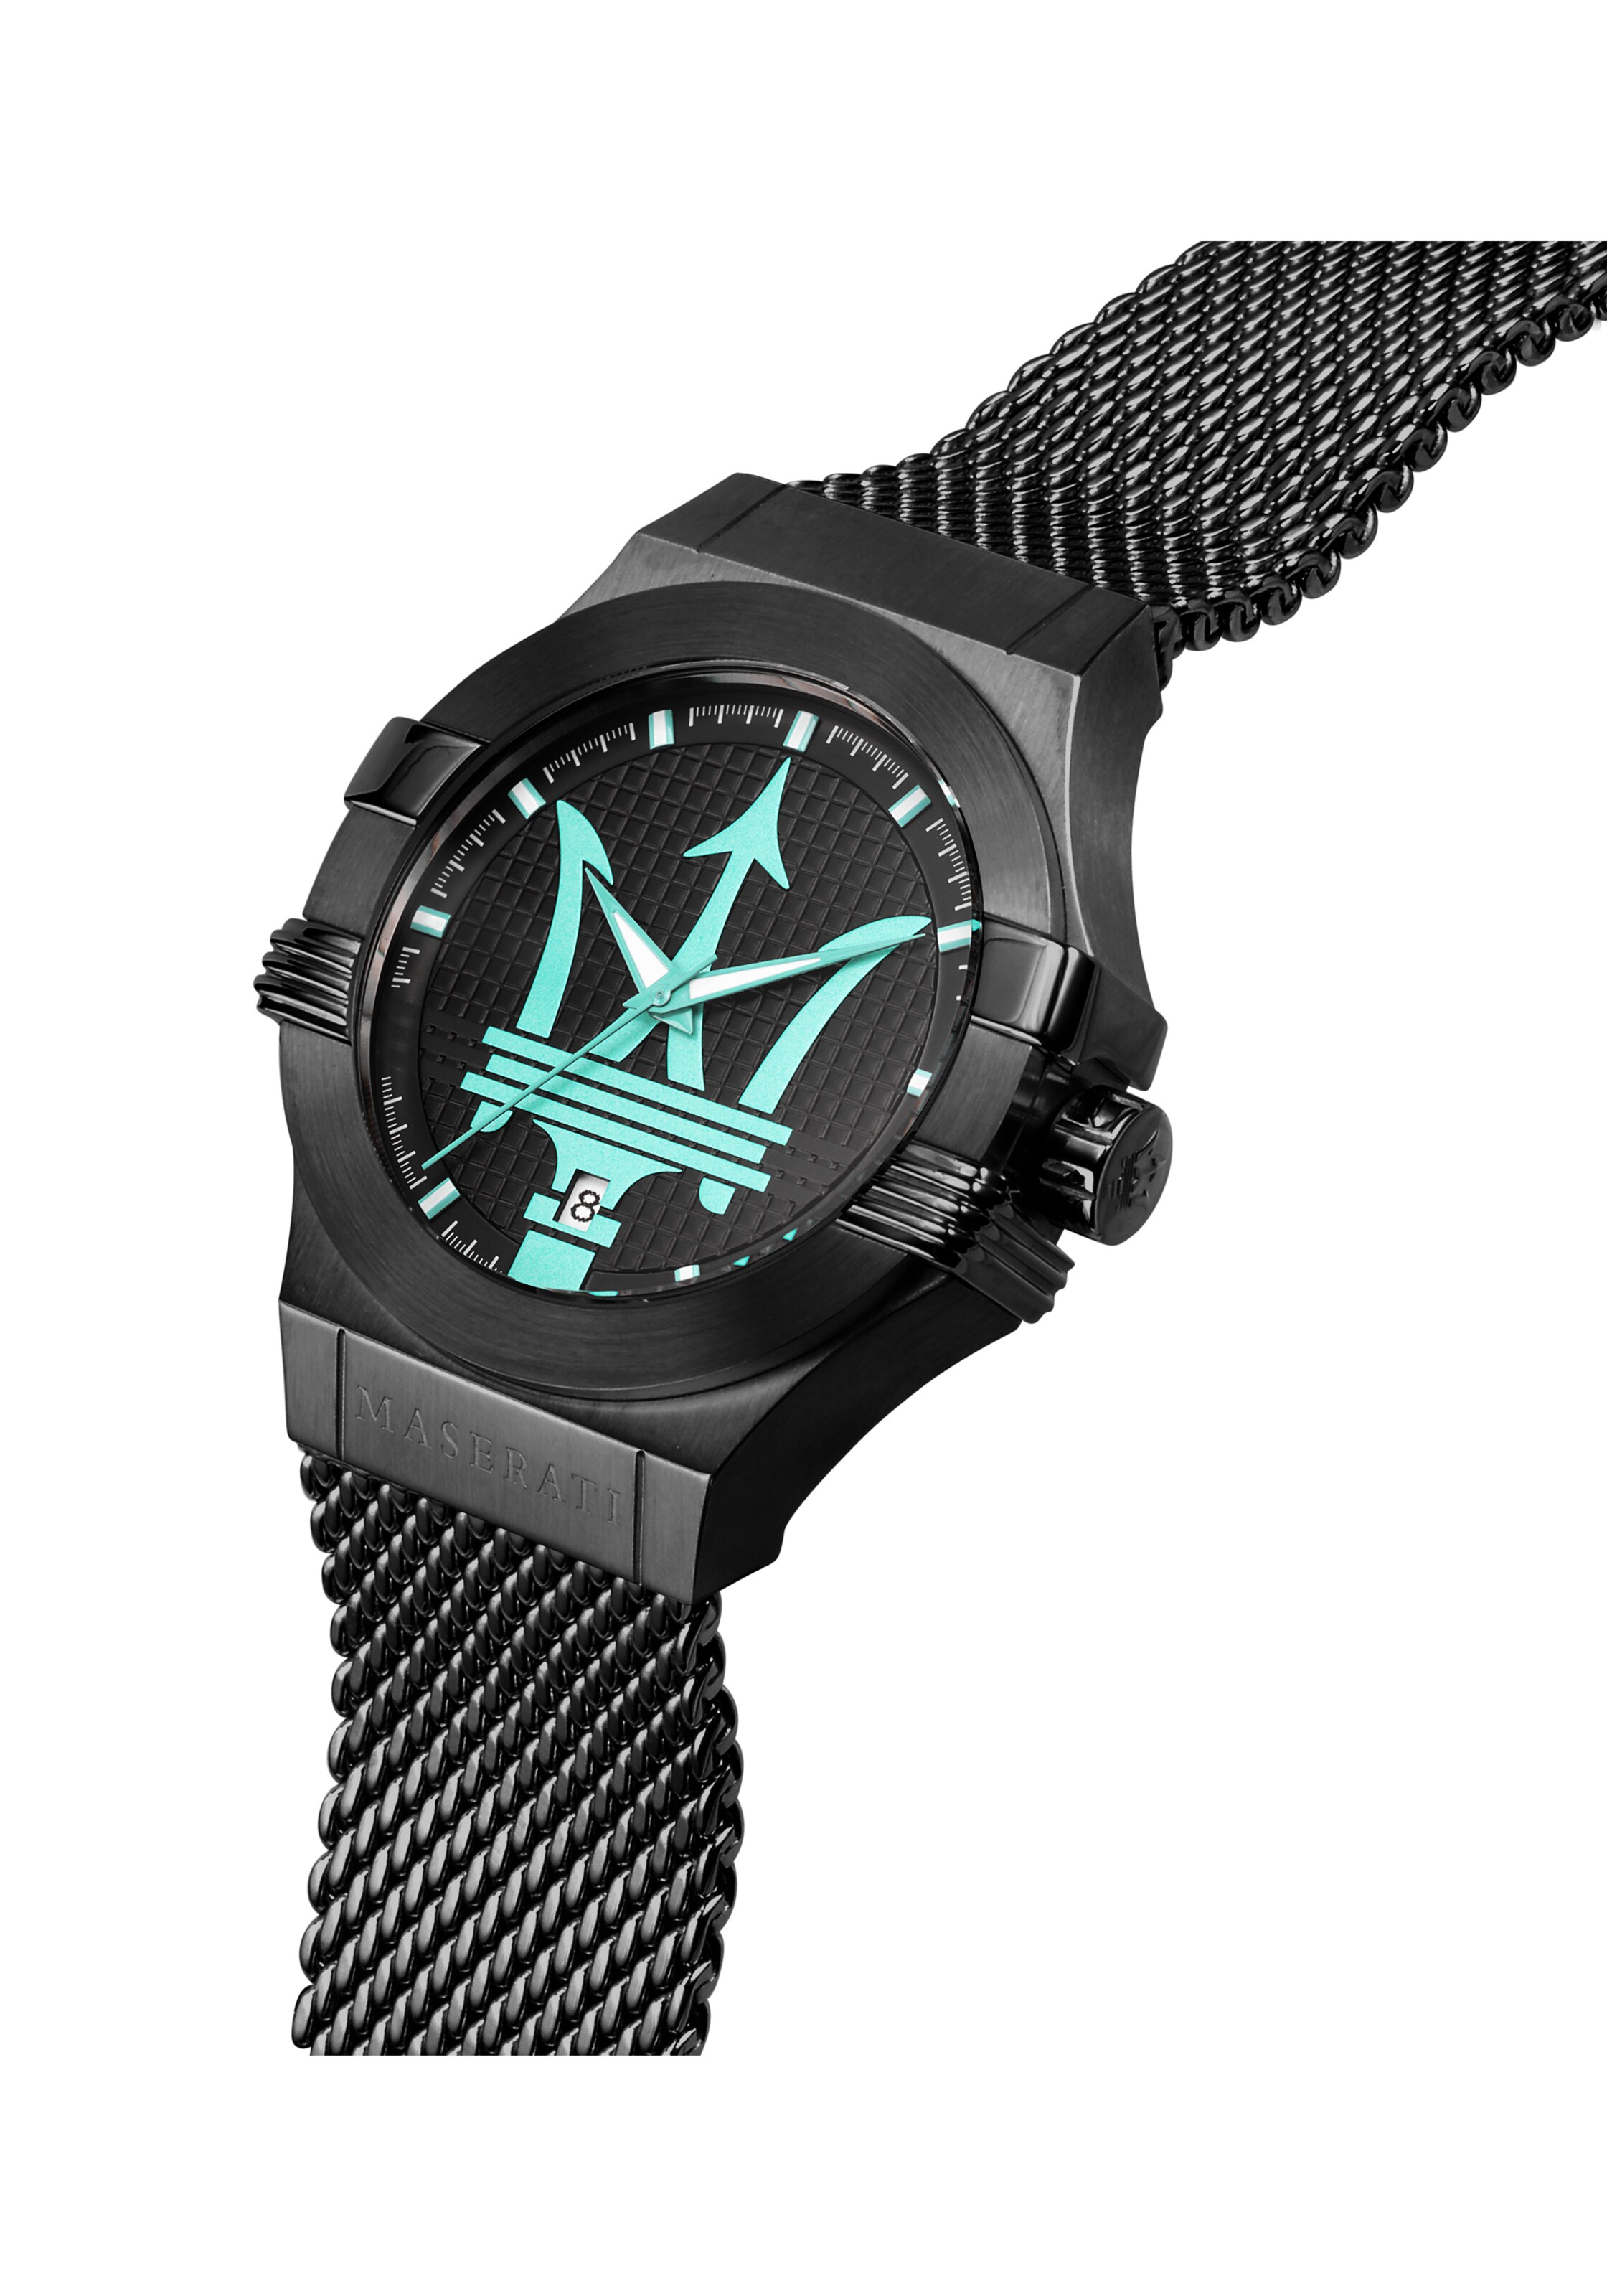 Männer Uhren Maserati Uhr in Schwarz - KO39878